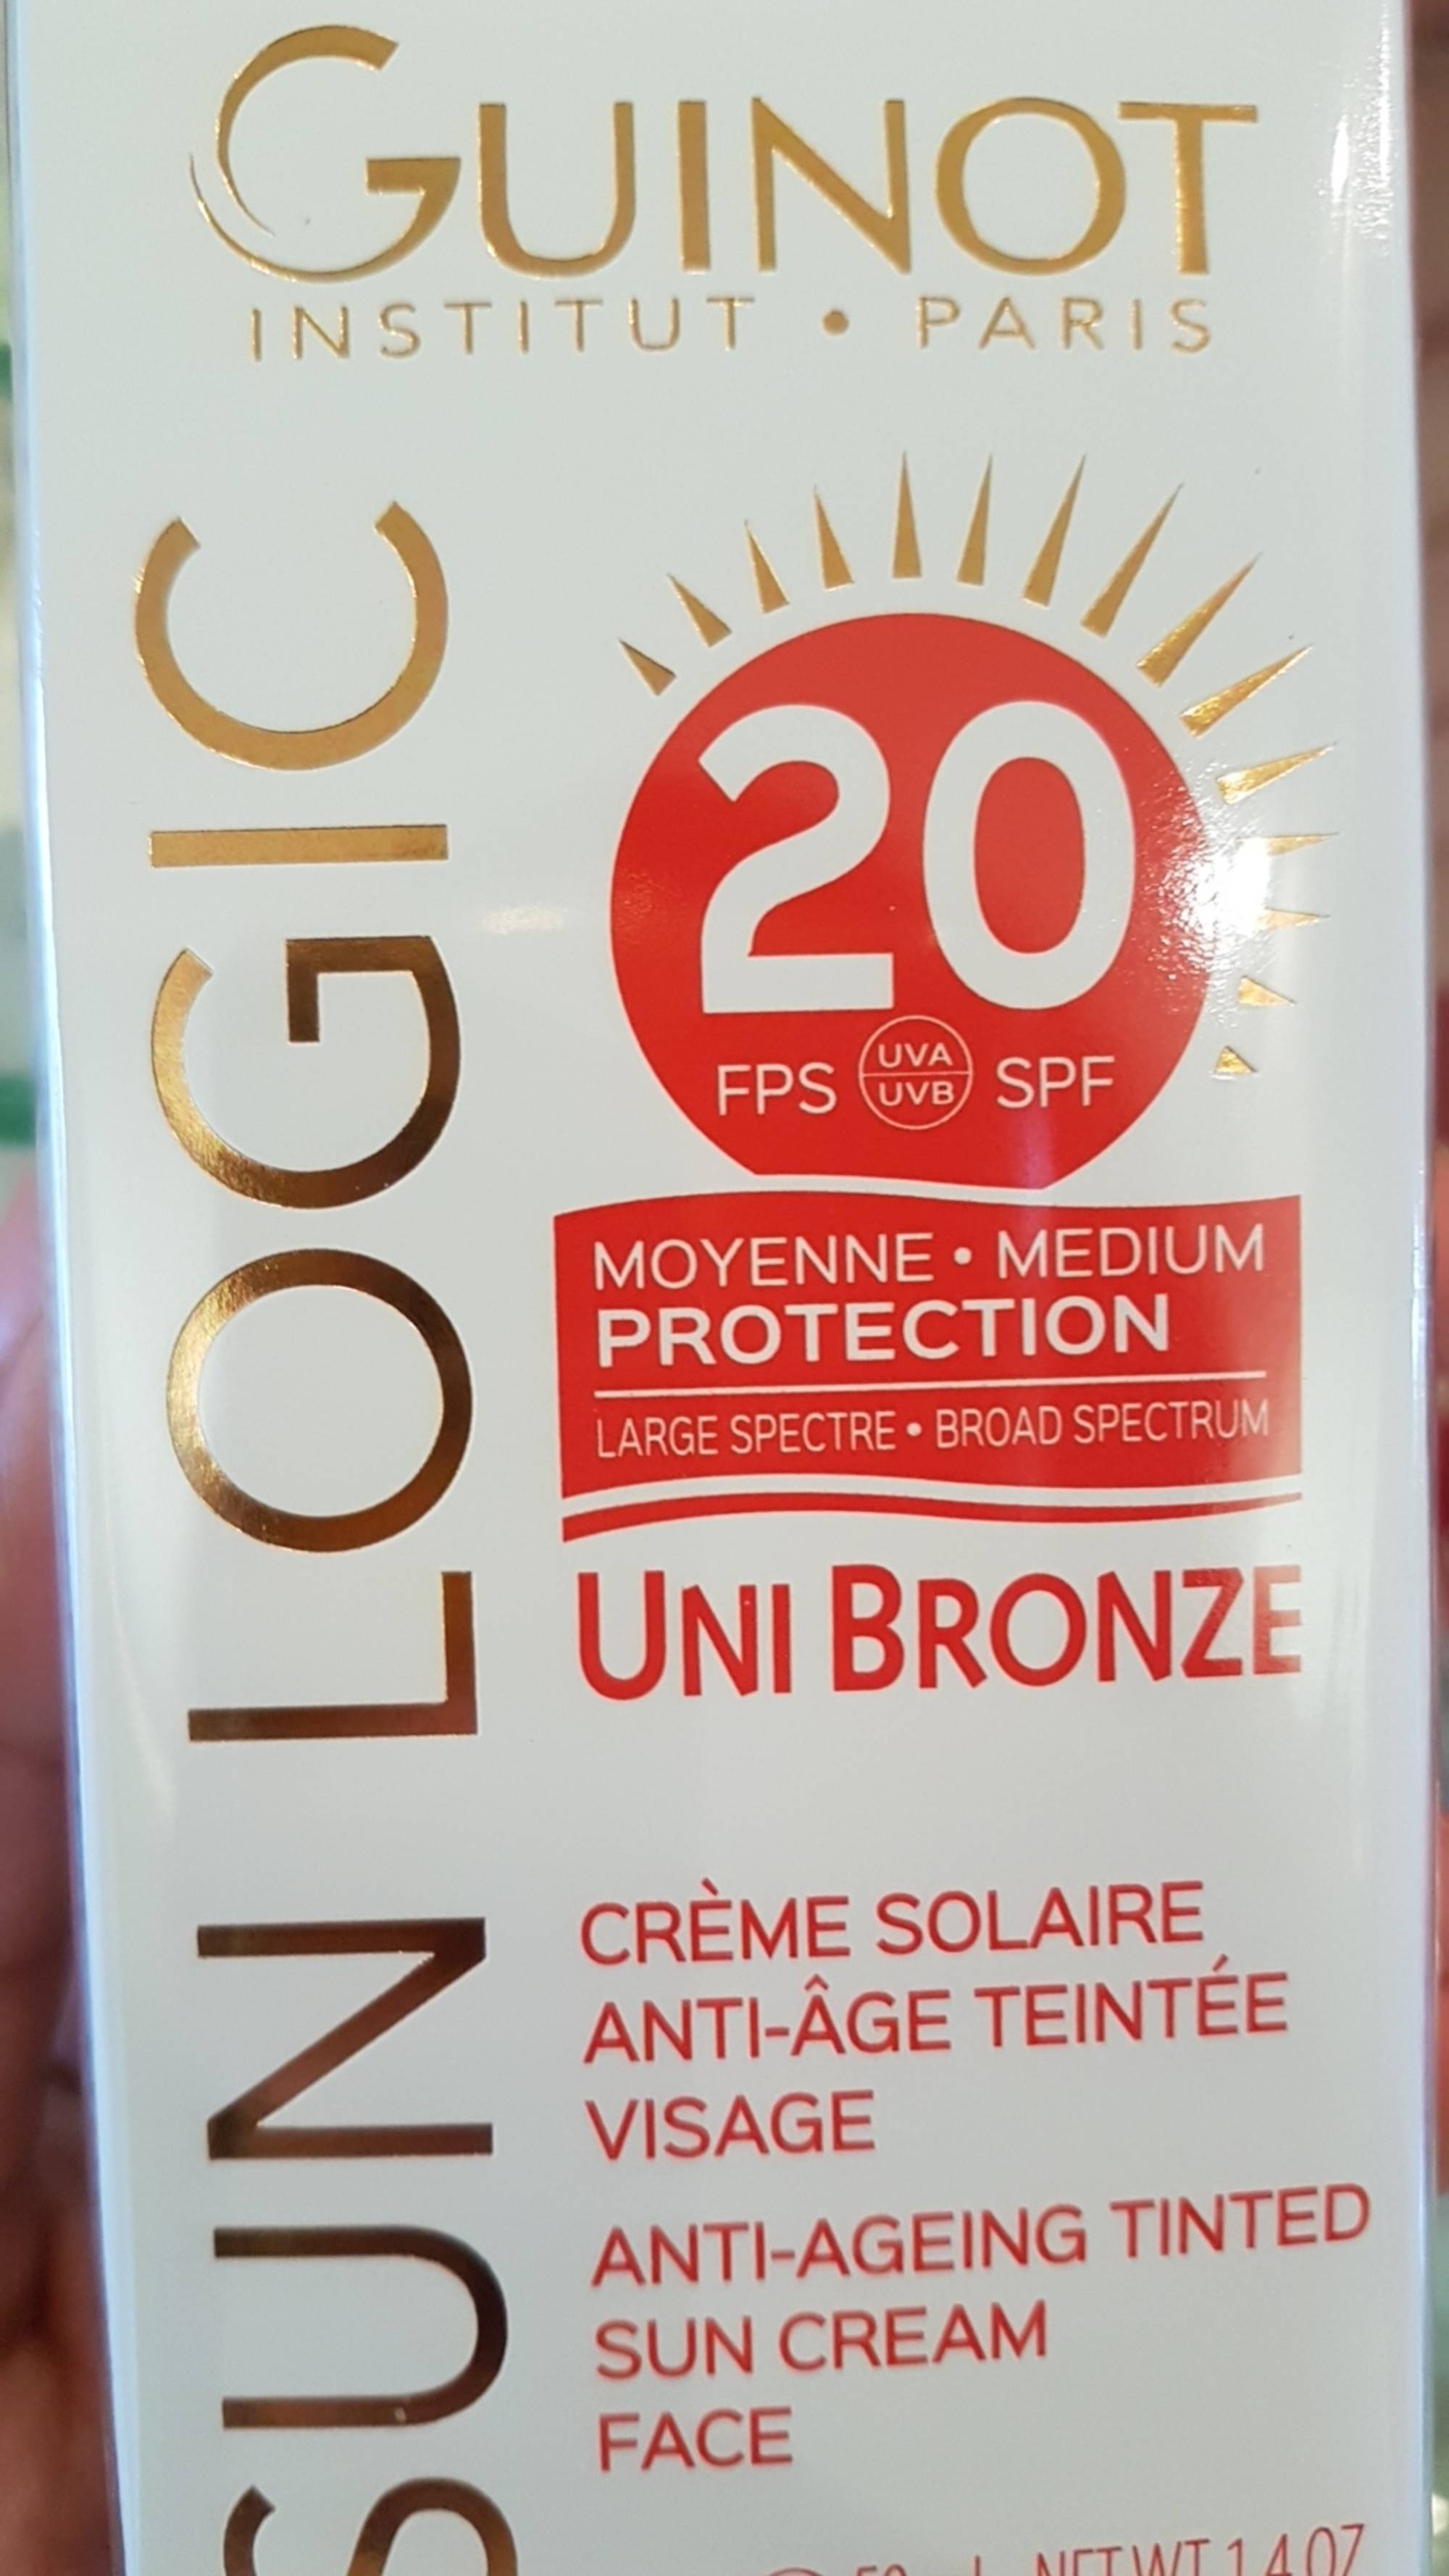 GUINOT - Sun logic - Crème solaire anti-âge teintée FPS 20